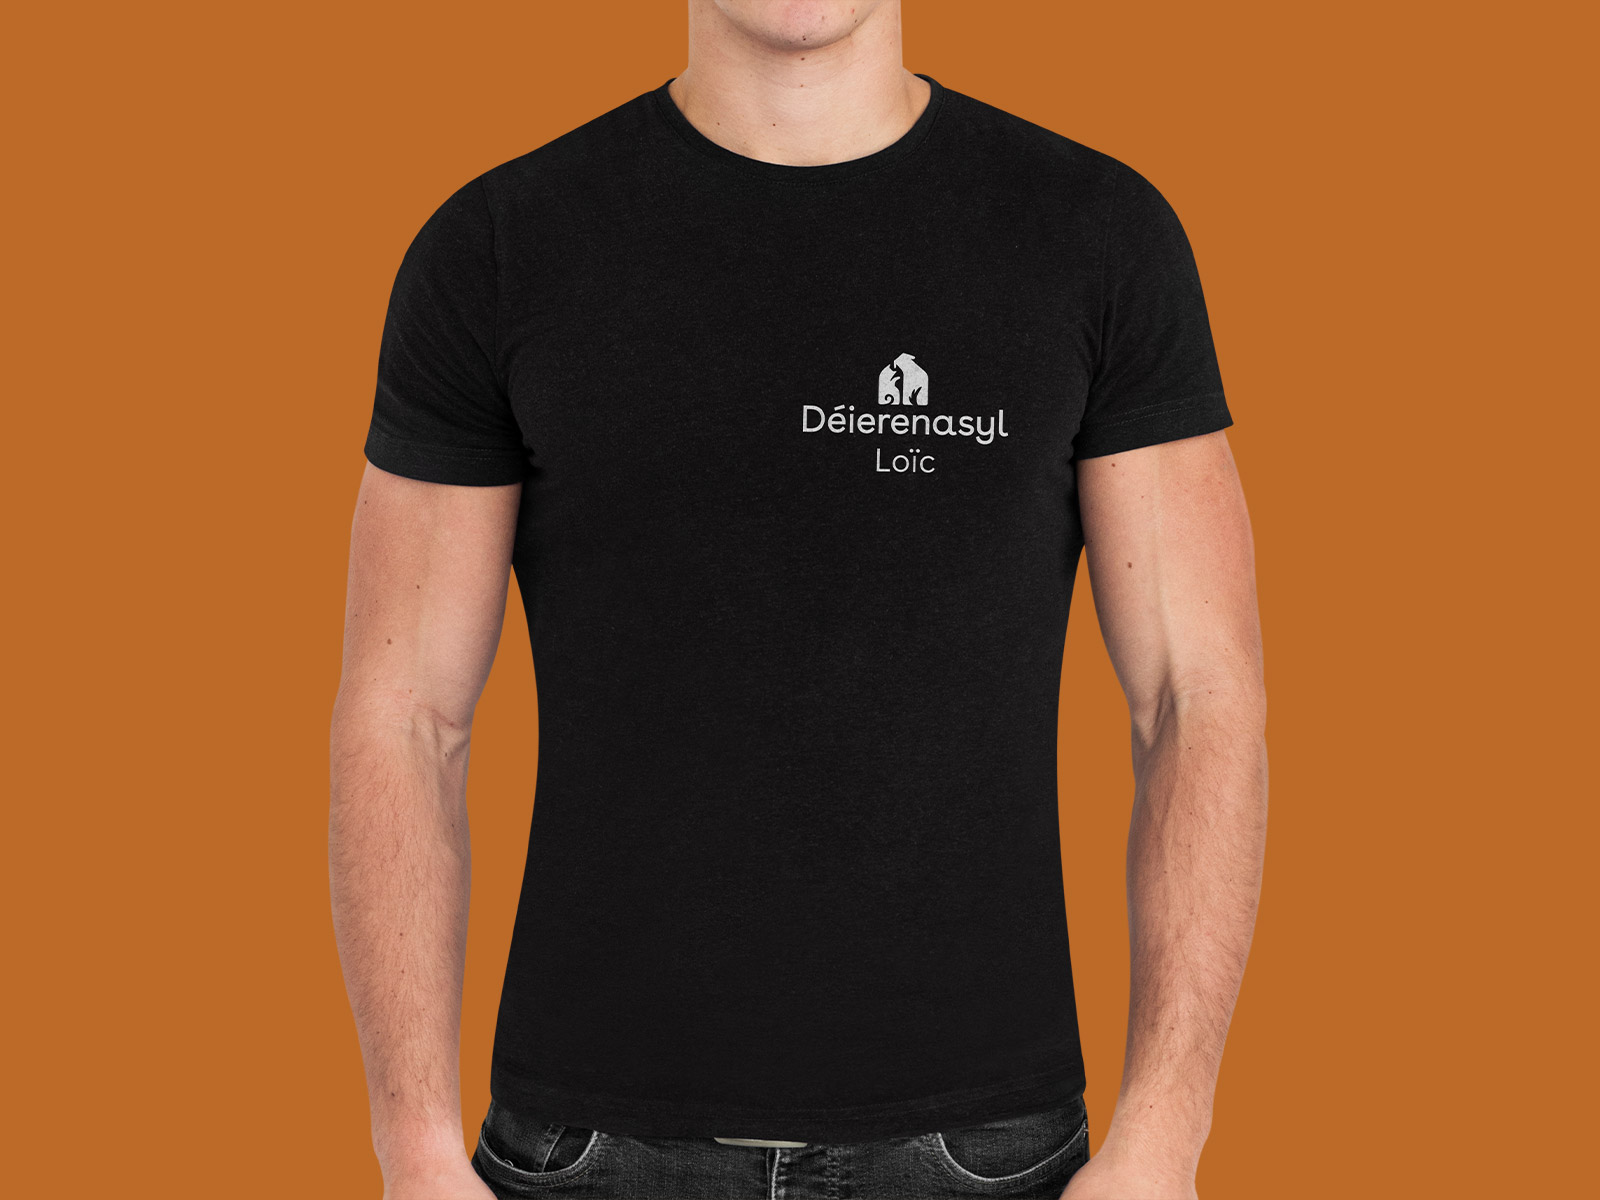 Das von propeller erstelle Logo auf einem schwarzen T-Shirt welches von einem Mann getragen wird